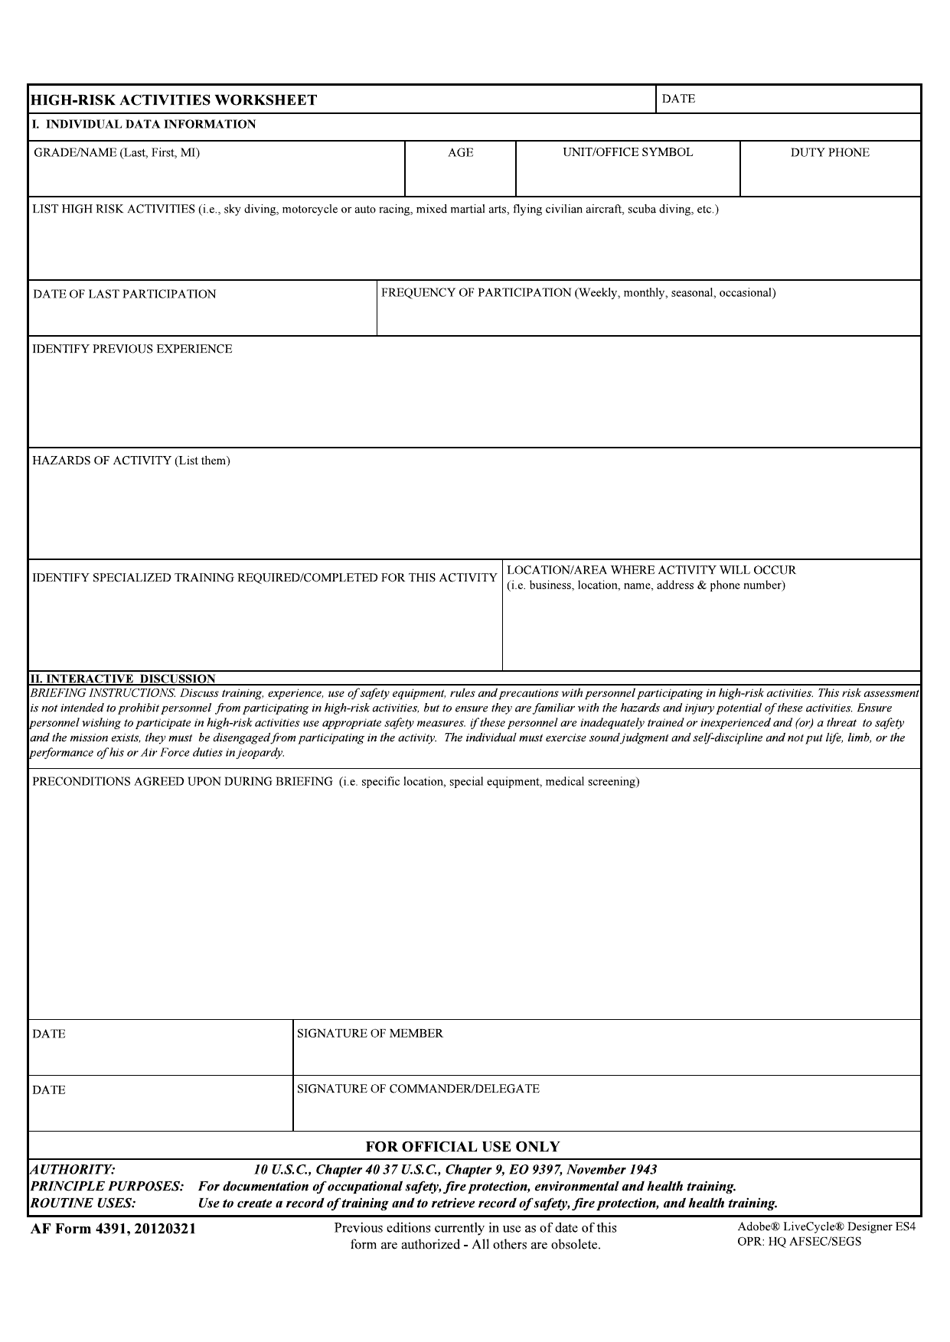 AF Form 4391 High-Risk Activities Worksheet, Page 1